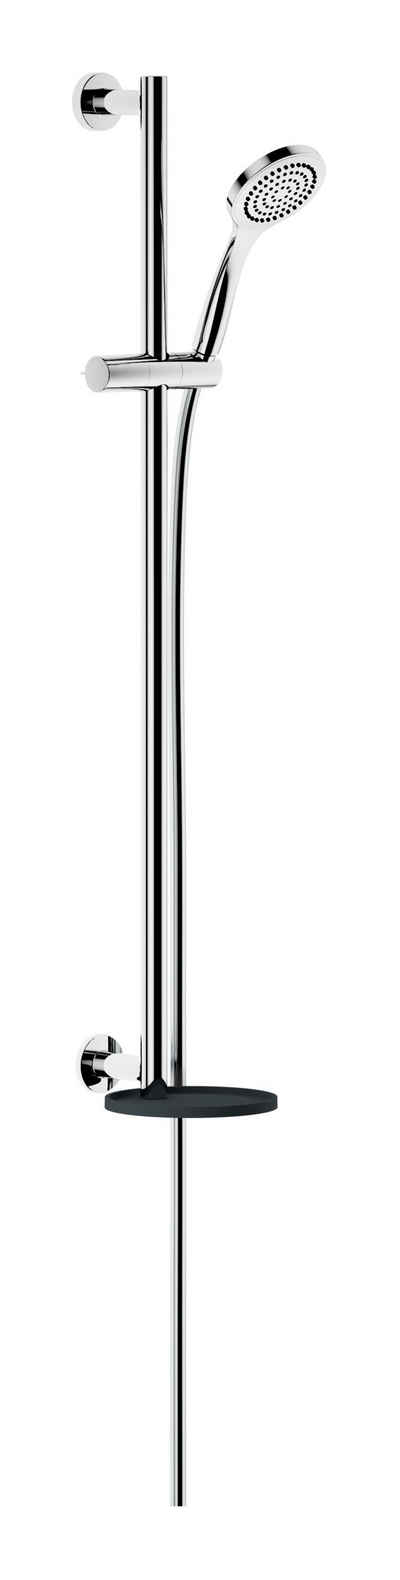 Keuco Brausegarnitur IXMO, Höhe 85.5 cm, 1 Strahlart(en), Brause-Set mit Ablage rund - Verchromt / Anthrazit